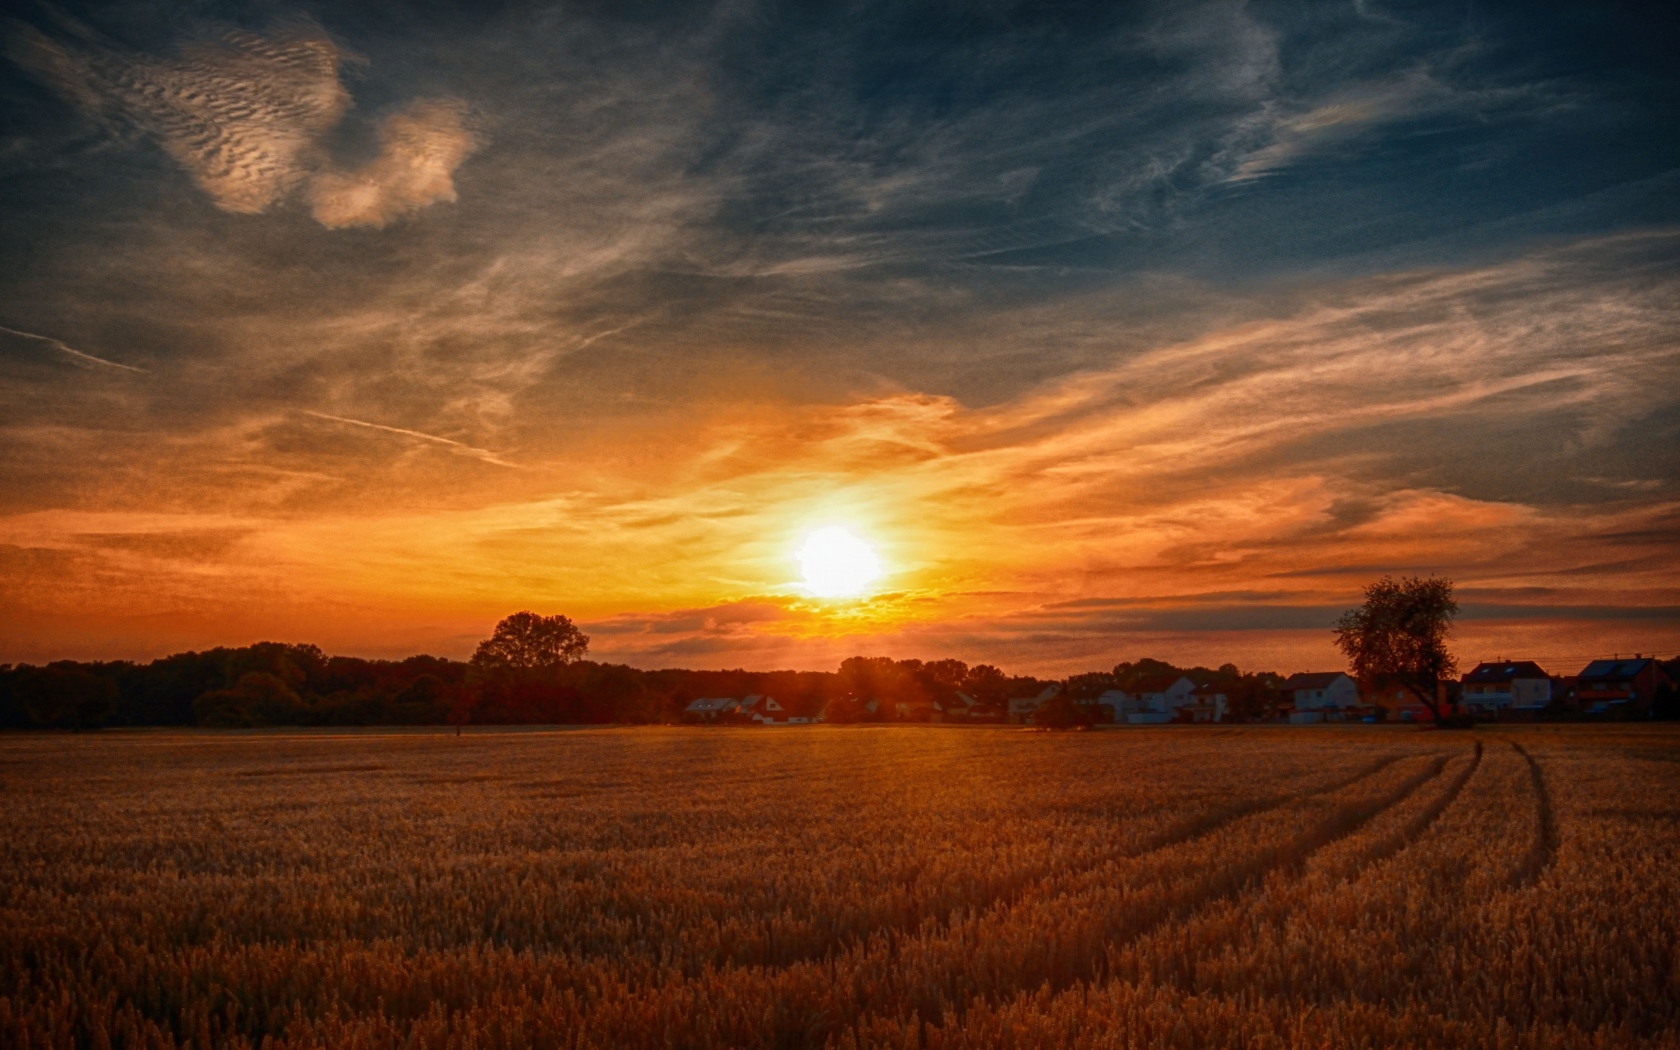 Рассвет над полем с желтой пшеницей